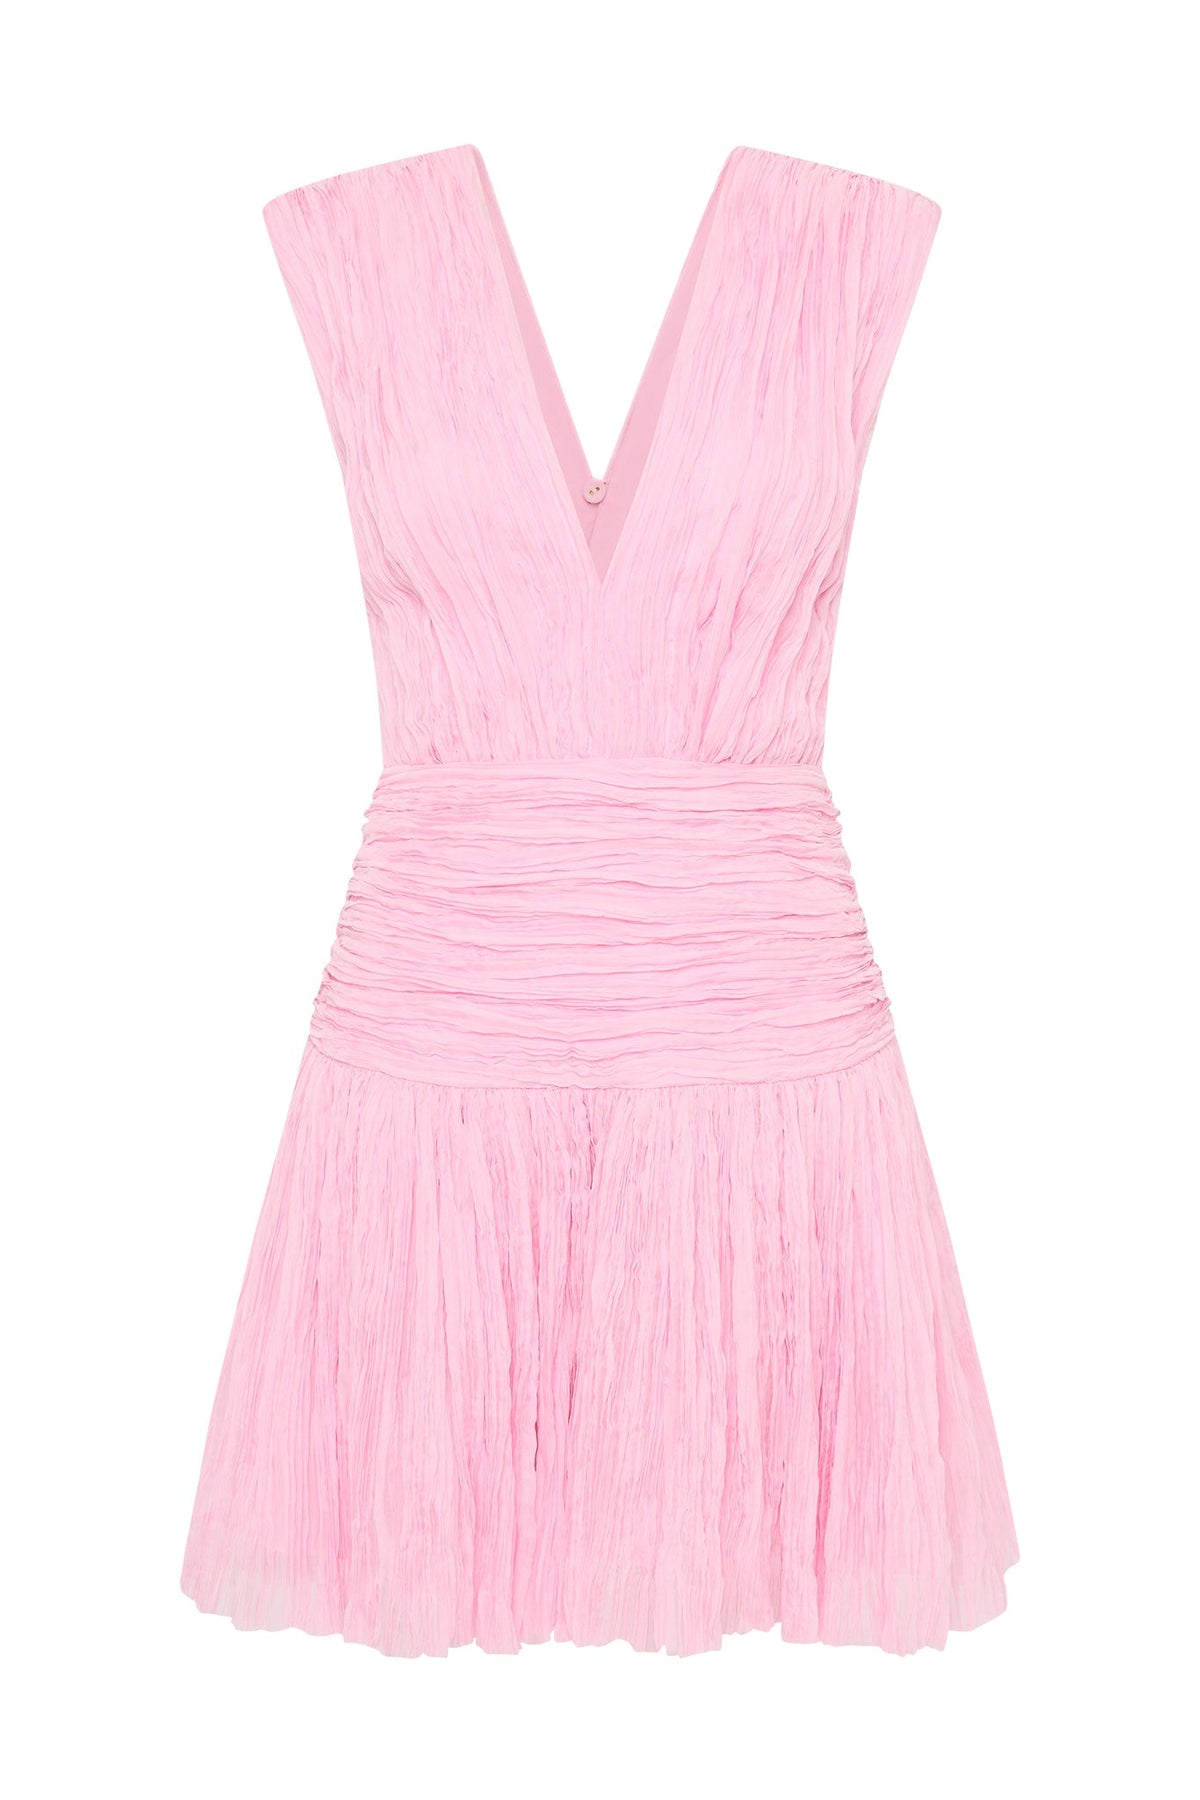 Escapist Mini Dress - Flash Pink